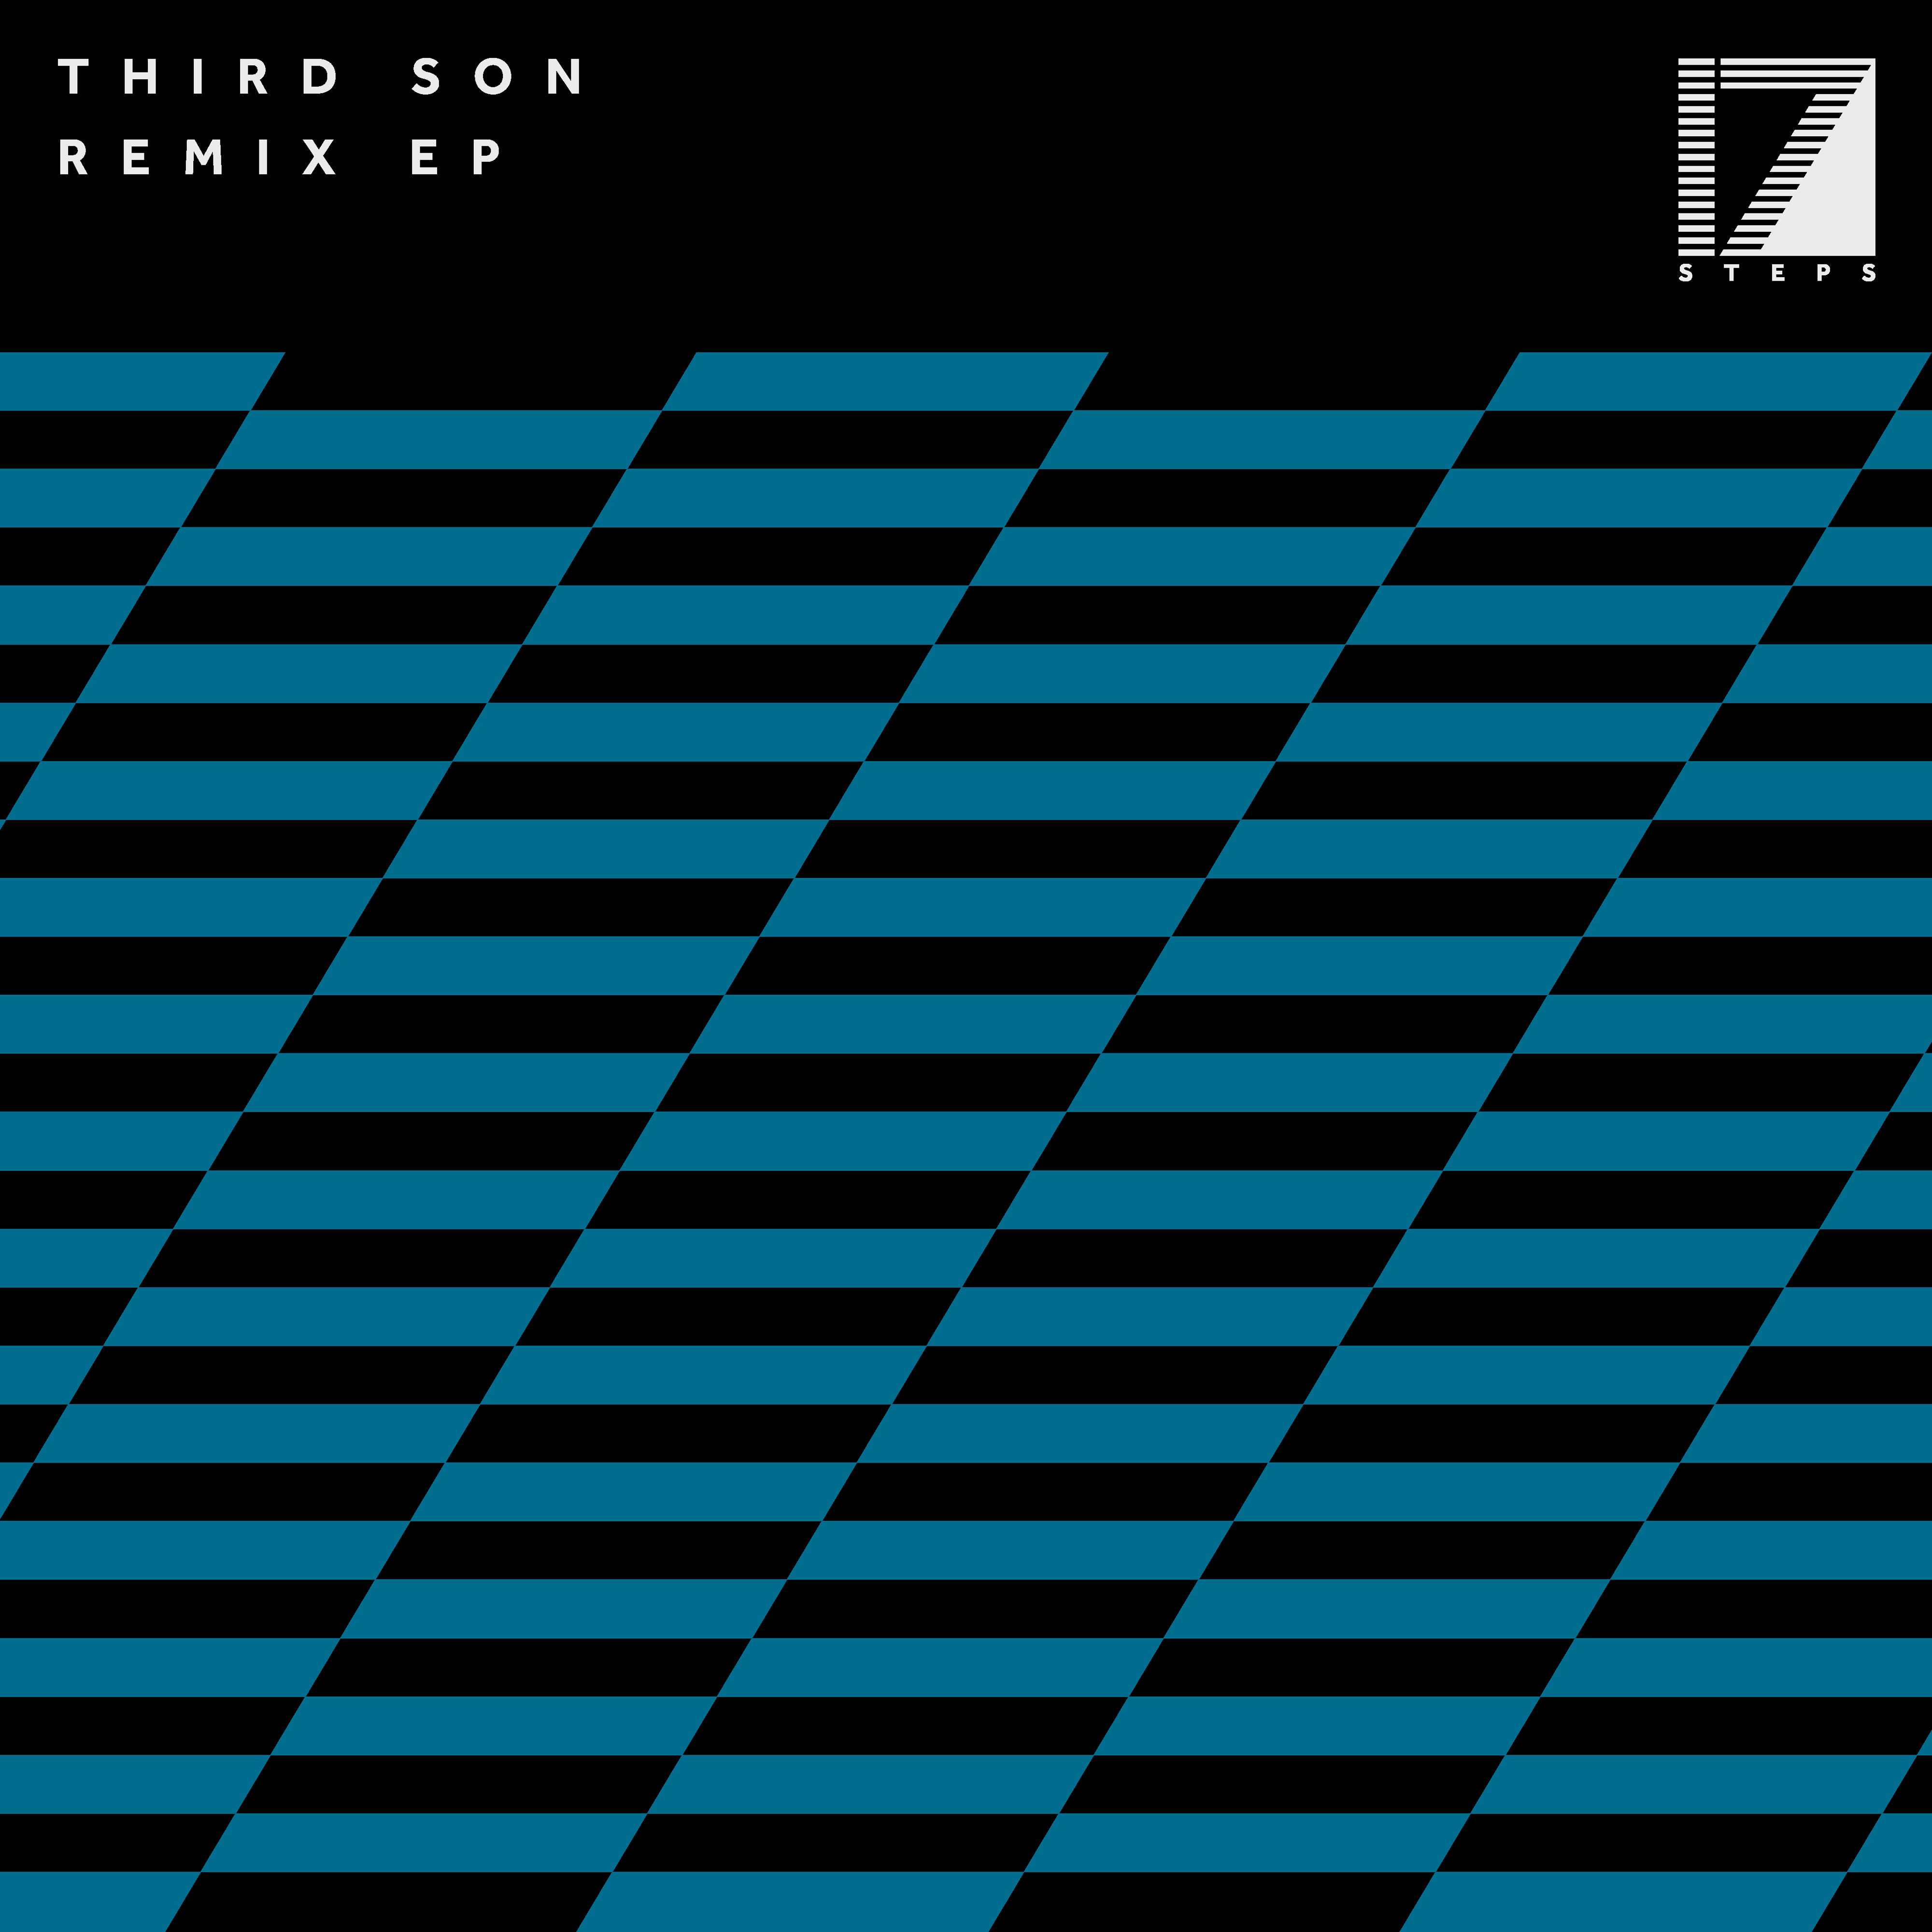 THIRD SON – REMIX EP